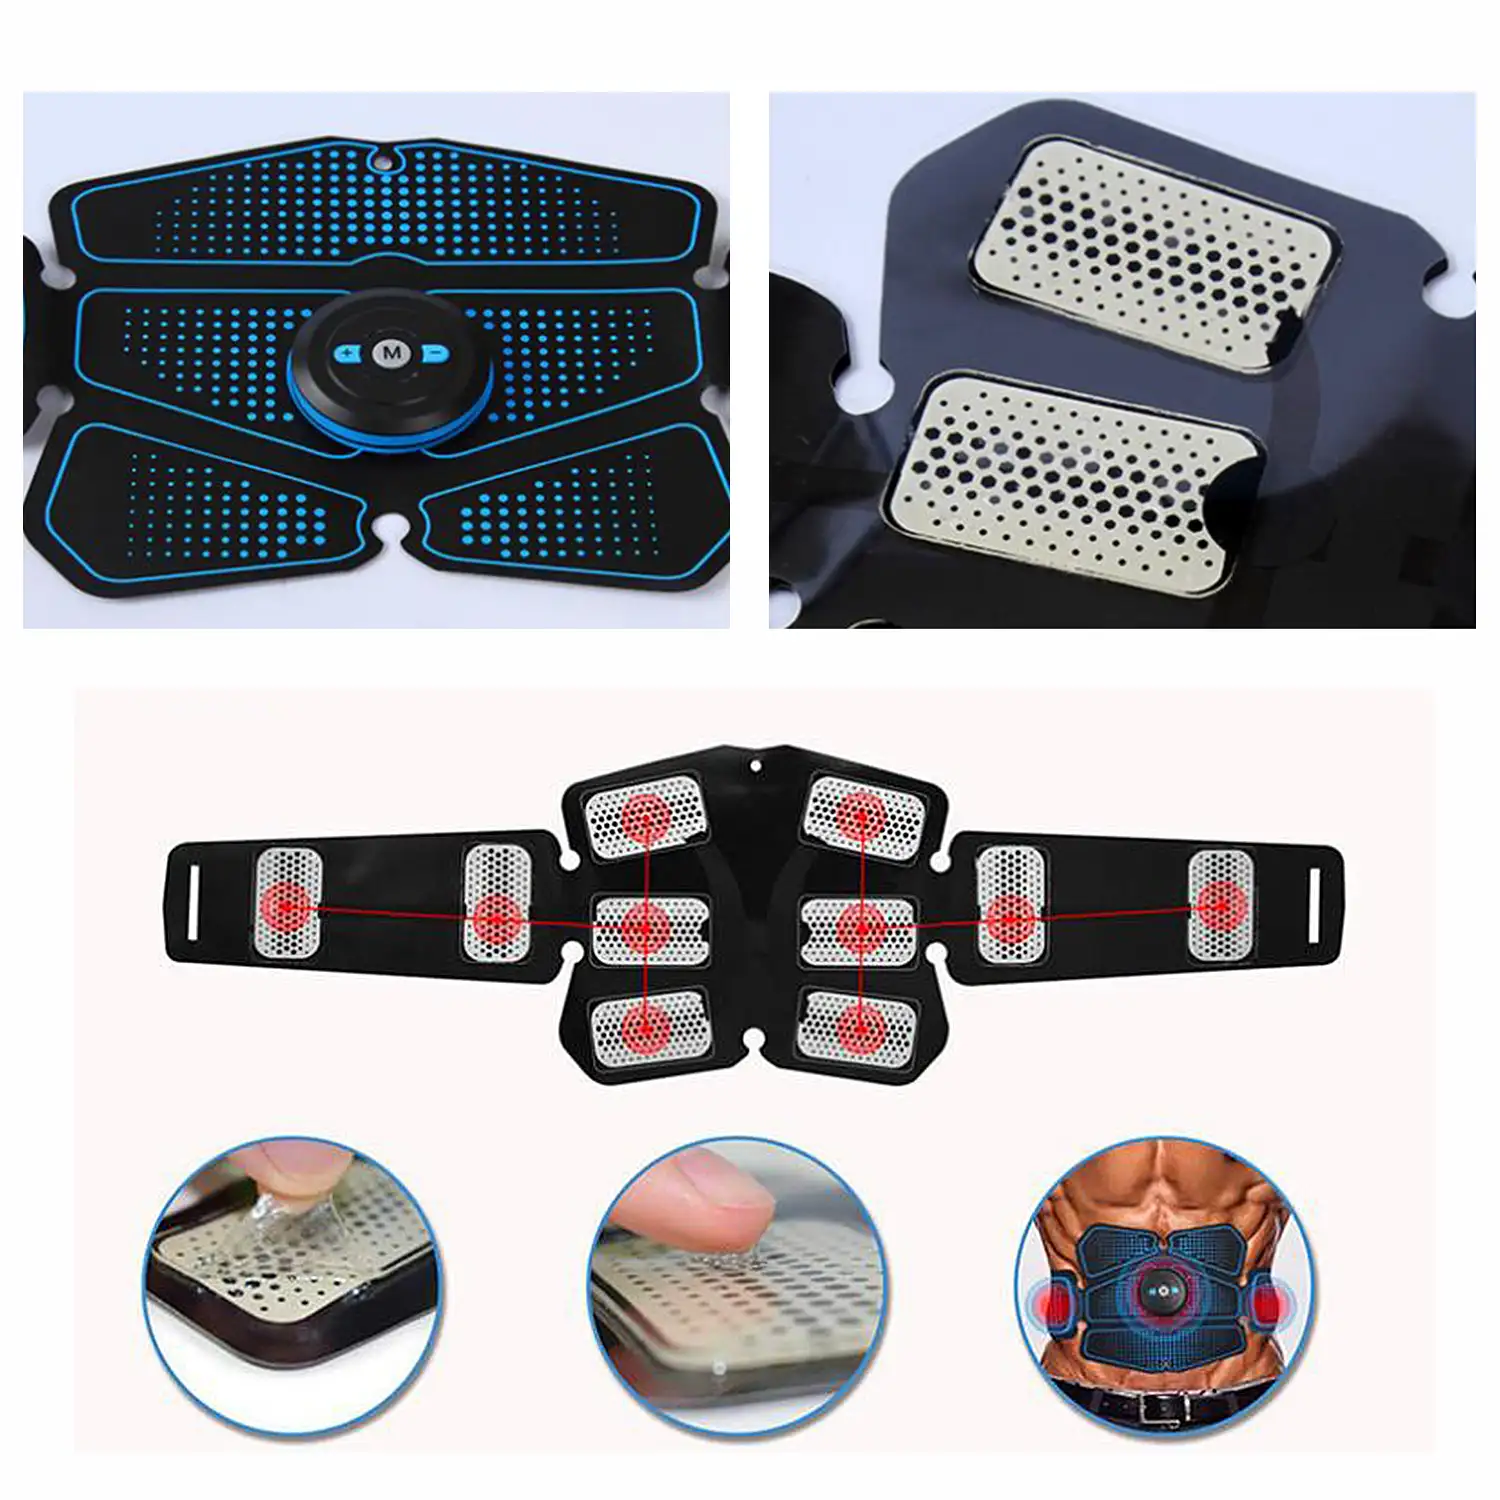 Cinturón electroestimulador muscular y de masaje EMS inteligente. Masajeador estimulador para abdominales, brazos/piernas. Batería recargable.